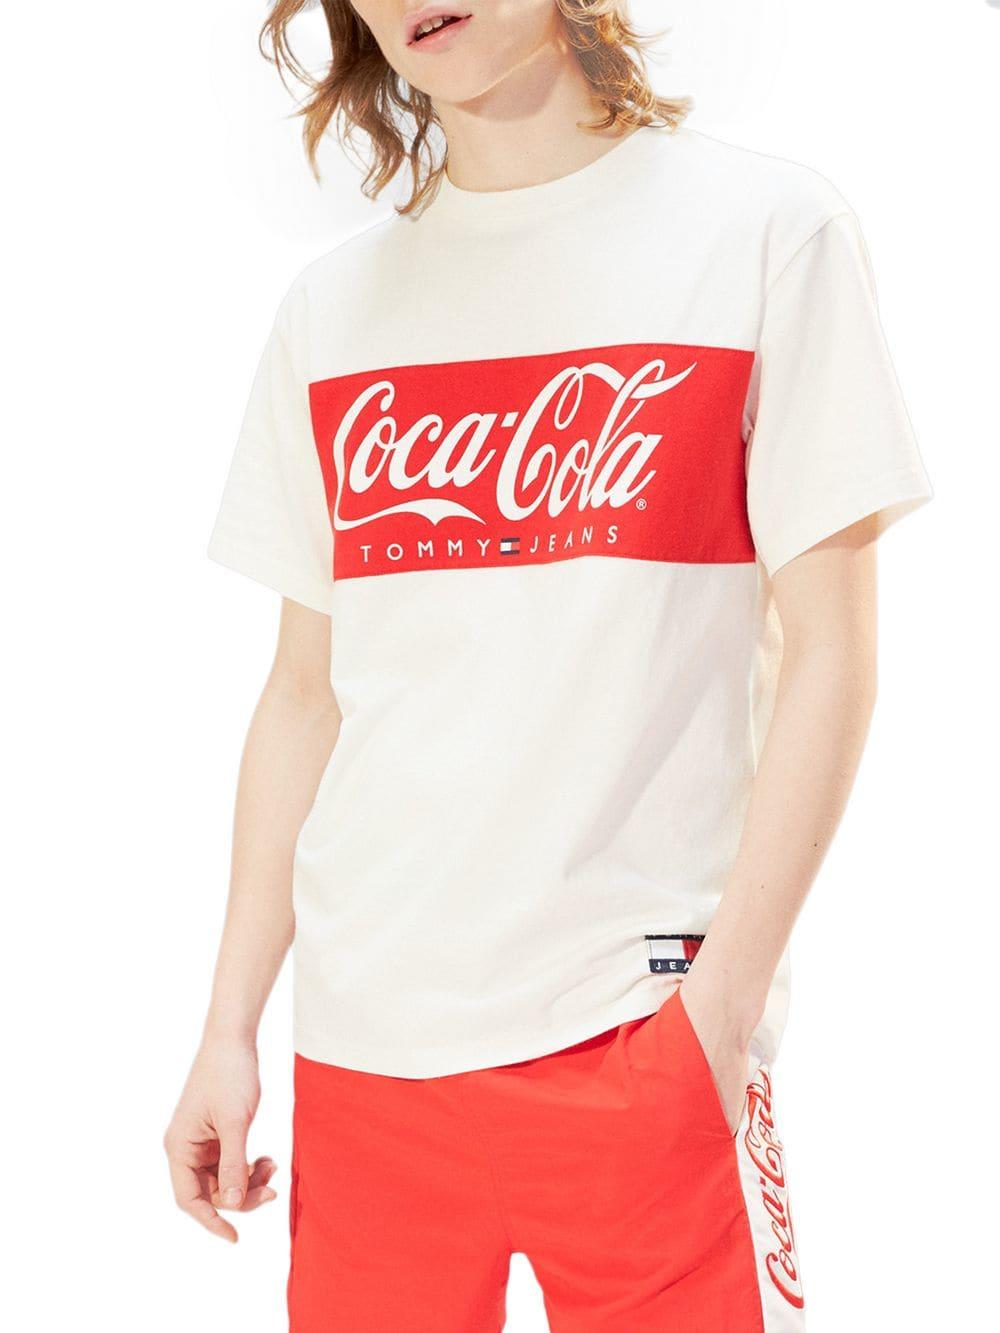 tommy hilfiger t shirt coca cola